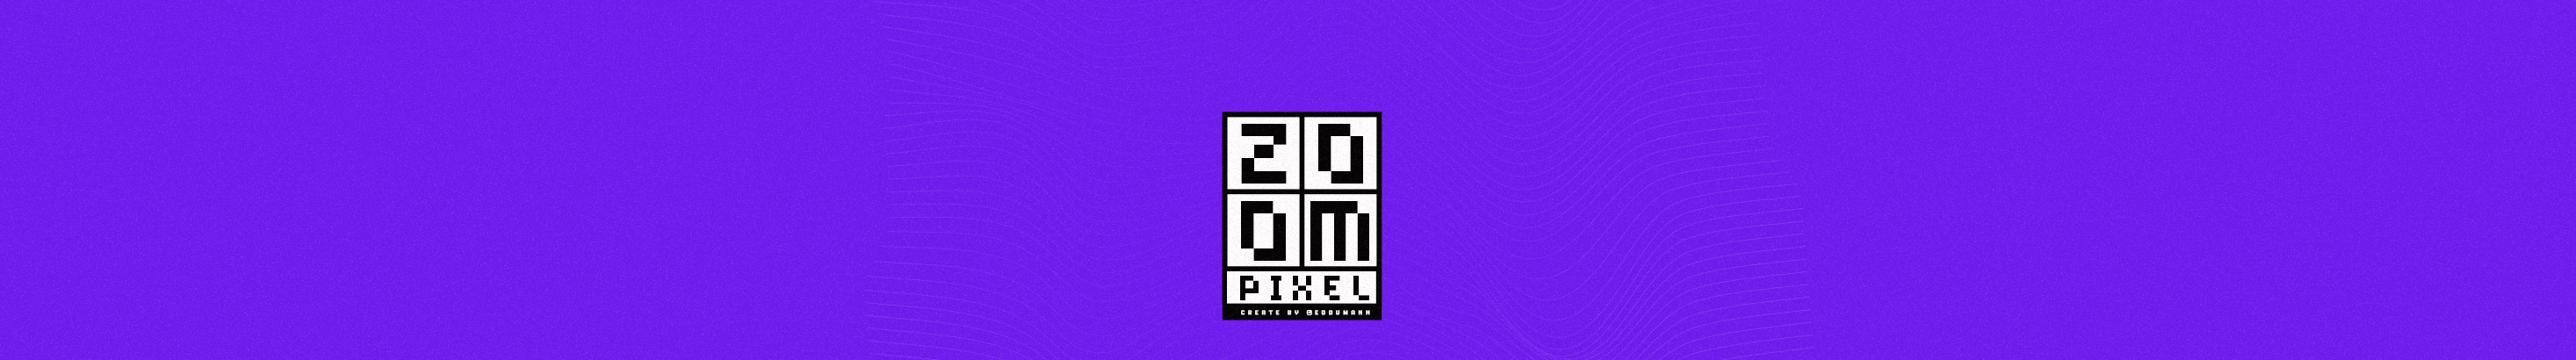 Banner de perfil de Zoom Pixel